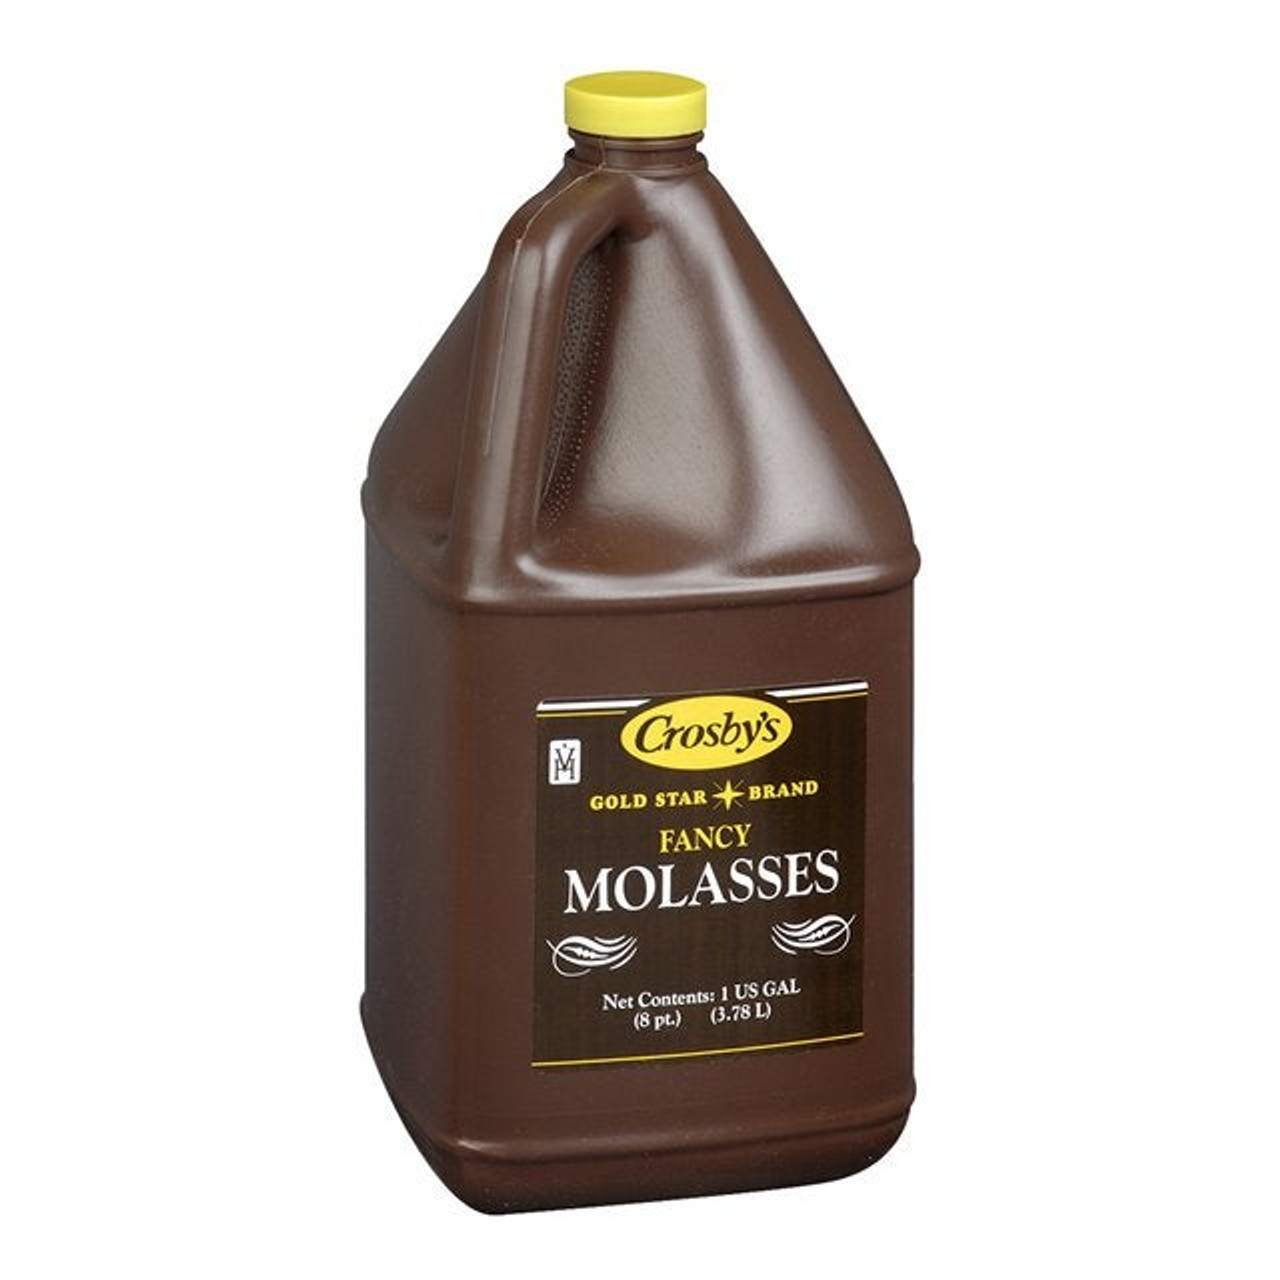 Crosbys Fancy Molasses | 4L/Unit, 1 Unit/Case